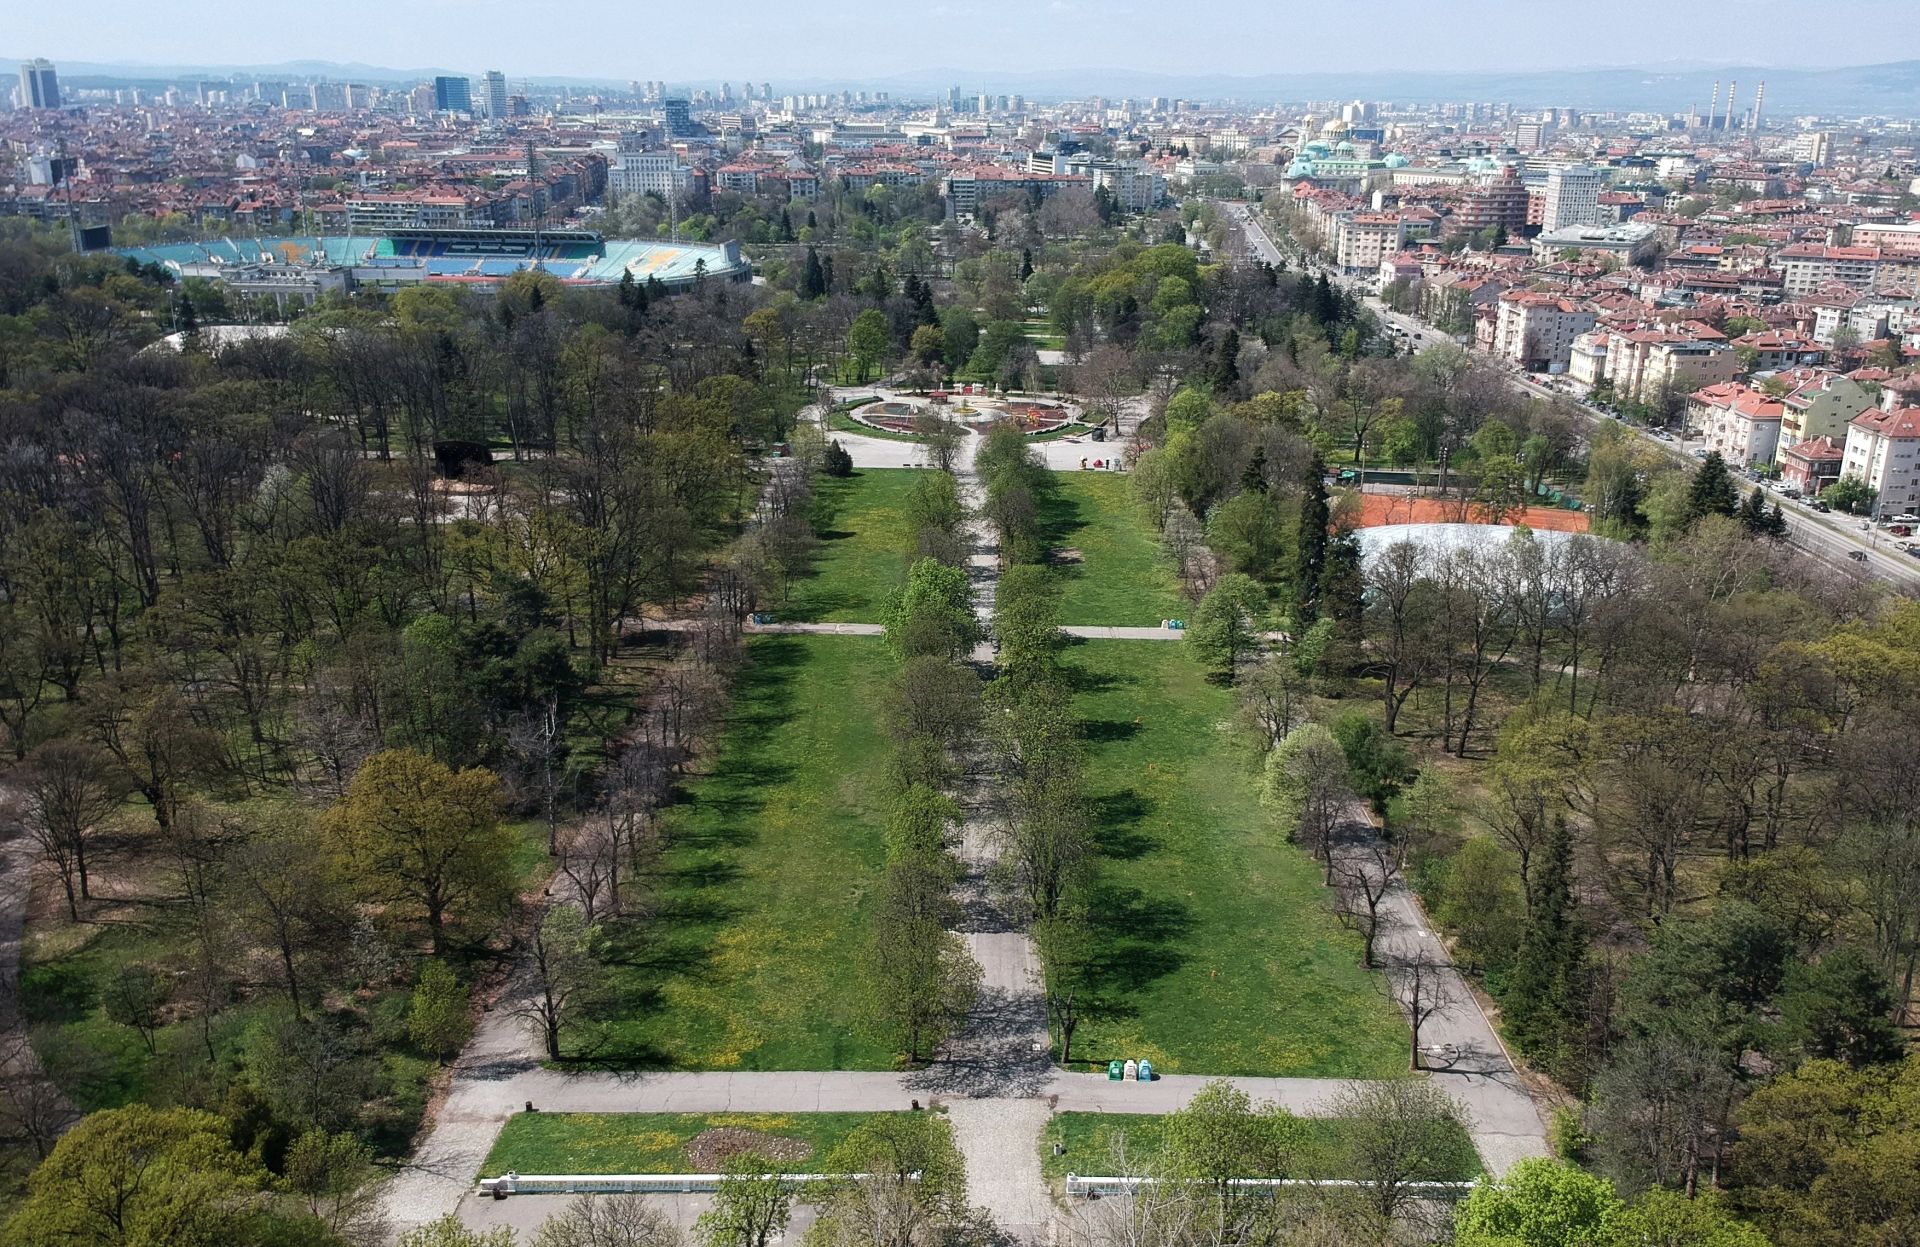 В документи прозират недвусмислени намерения "Борисовата градина" да загуби завинаги огромни зелени масиви от над стогодишни дървета и да се превърне в строителна площадка